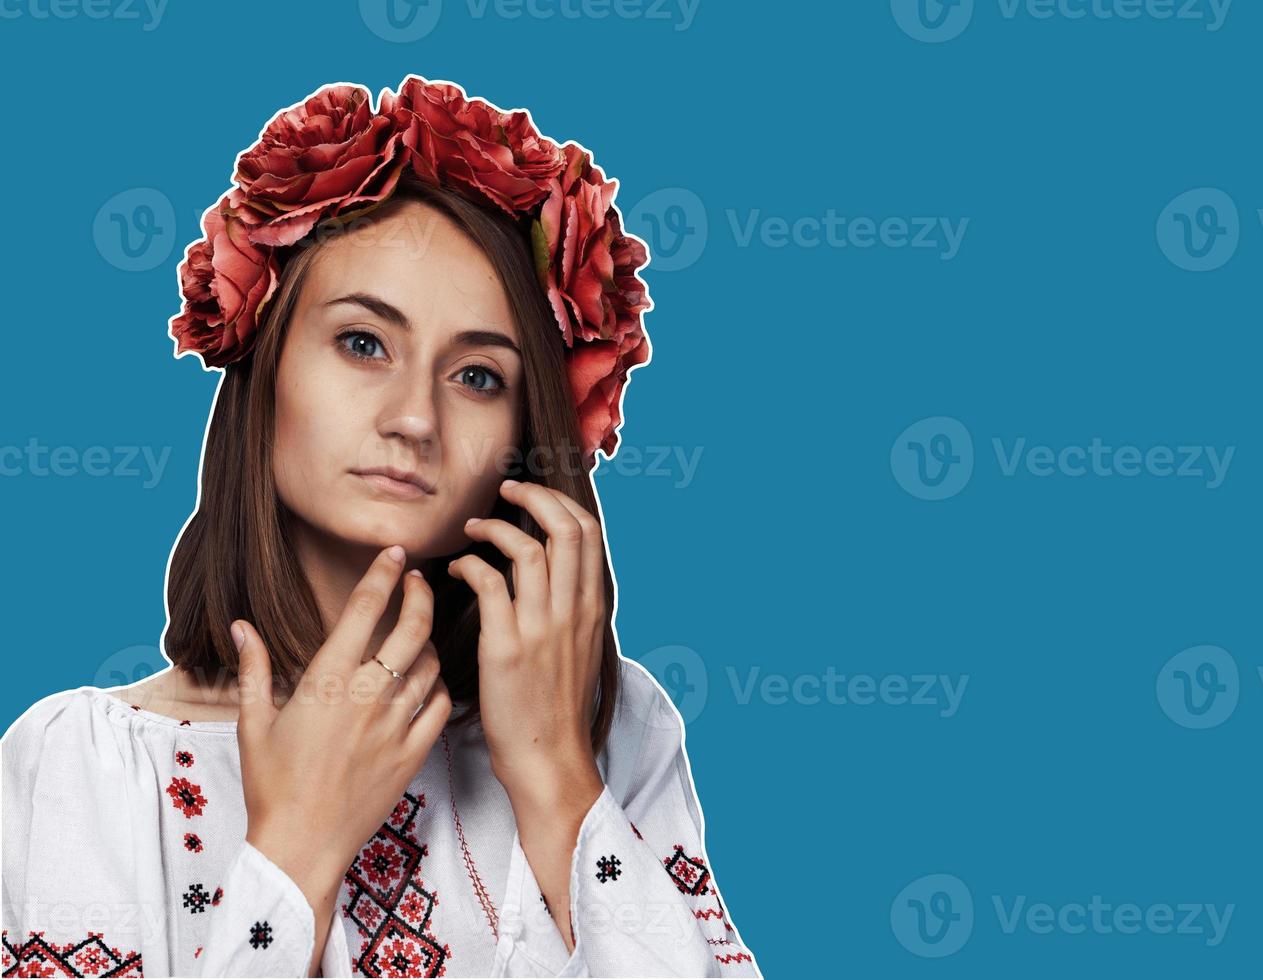 niña en el traje nacional ucraniano foto